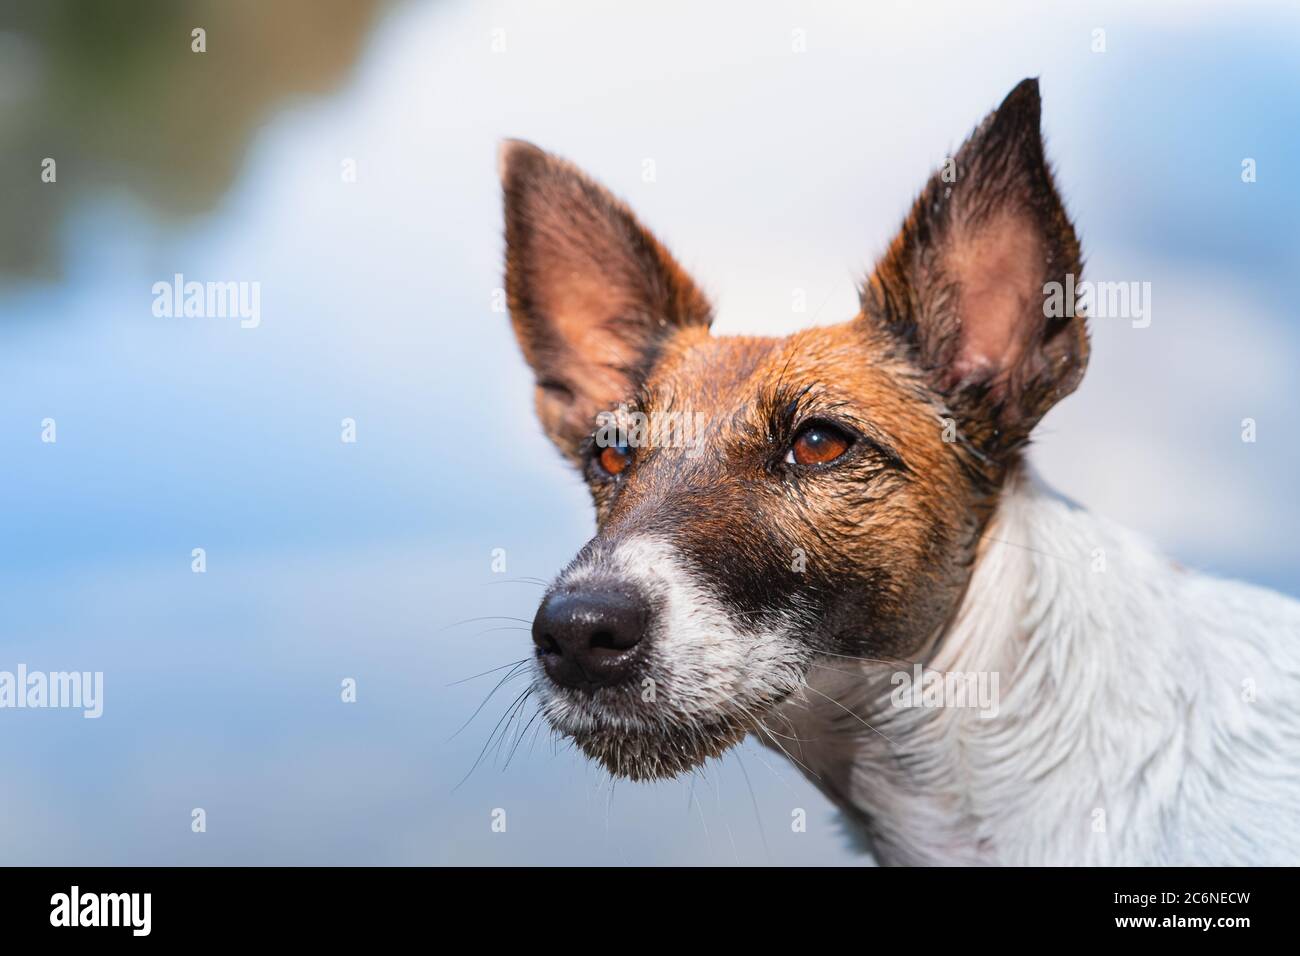 Primer plano retrato de un perro húmedo y suave del zorro. La cabeza de un cachorro después de nadar, luz natural de sol escena Foto de stock